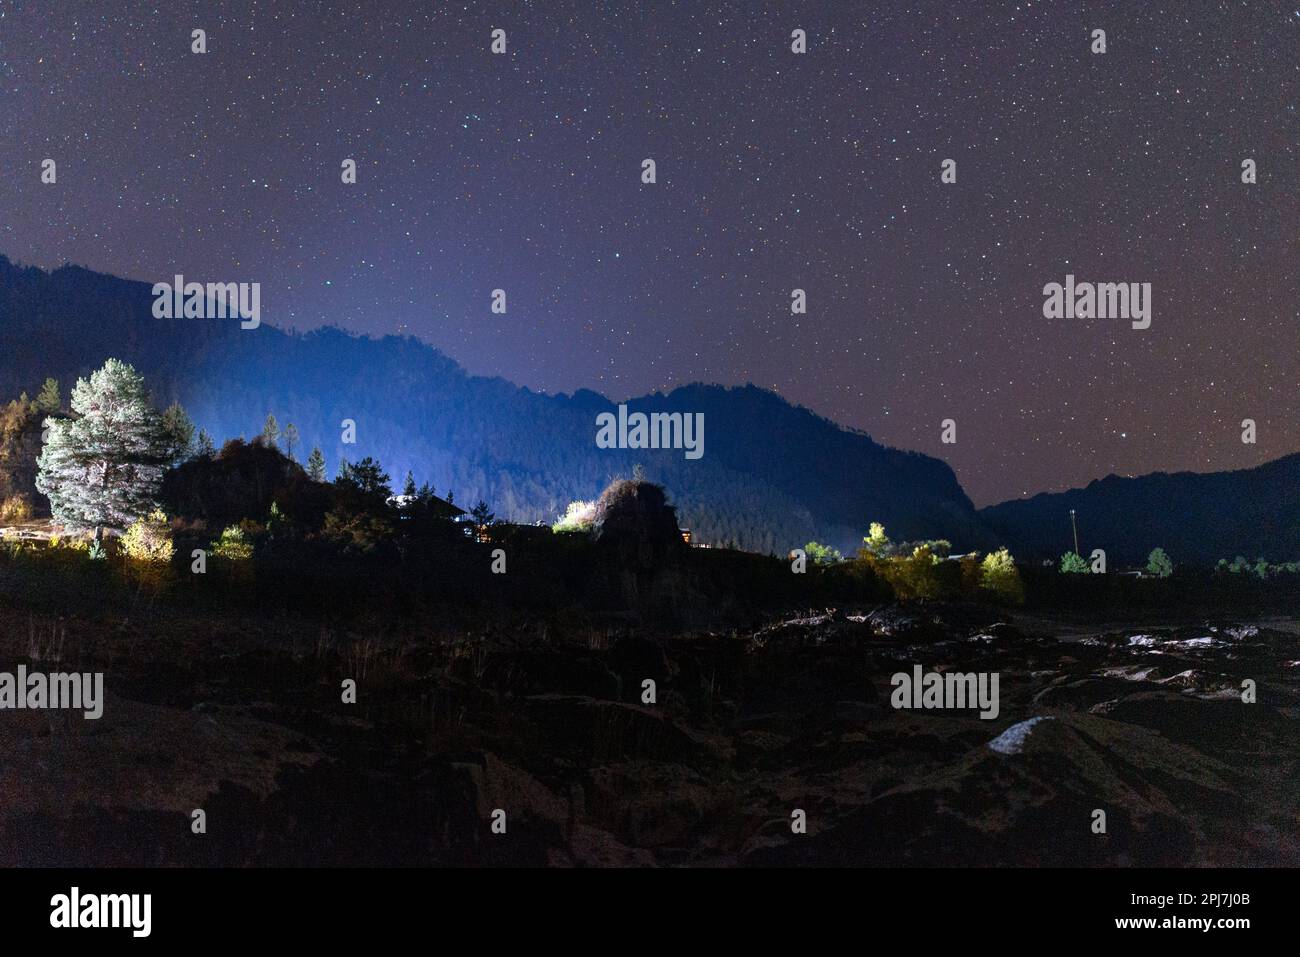 Das Steinufer des Flusses Katun im Schatten bei Nacht nahe der Silhouette eines Berges, der durch das Licht der anderen Häuser unter den Sternen beleuchtet wird Stockfoto